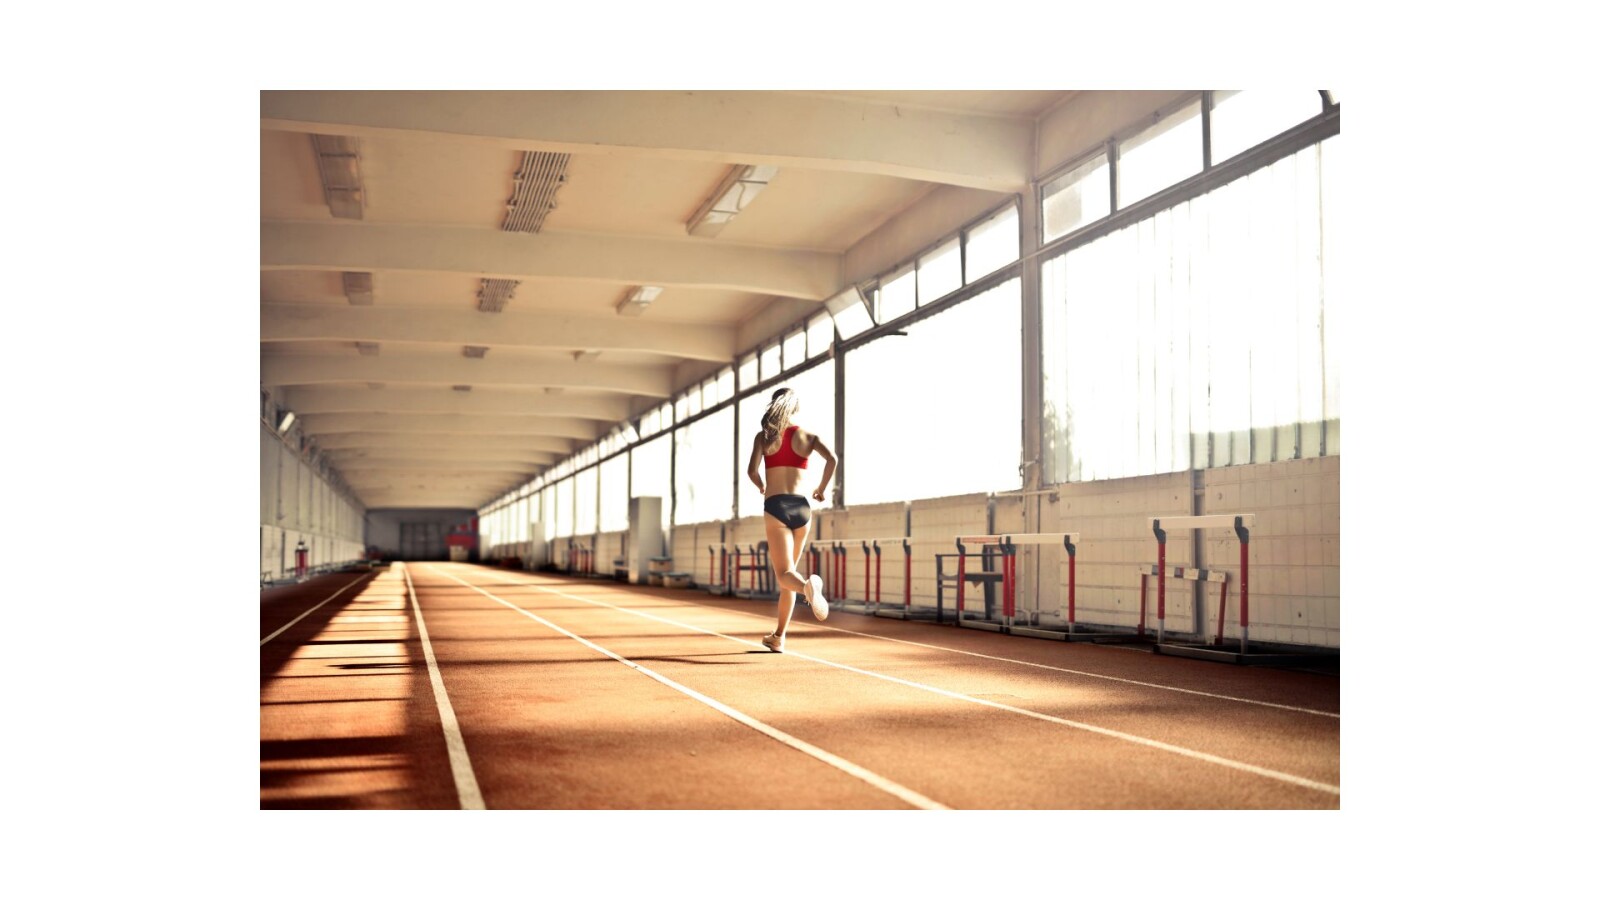 Kobieta biegnie w hali lekkoatletycznej